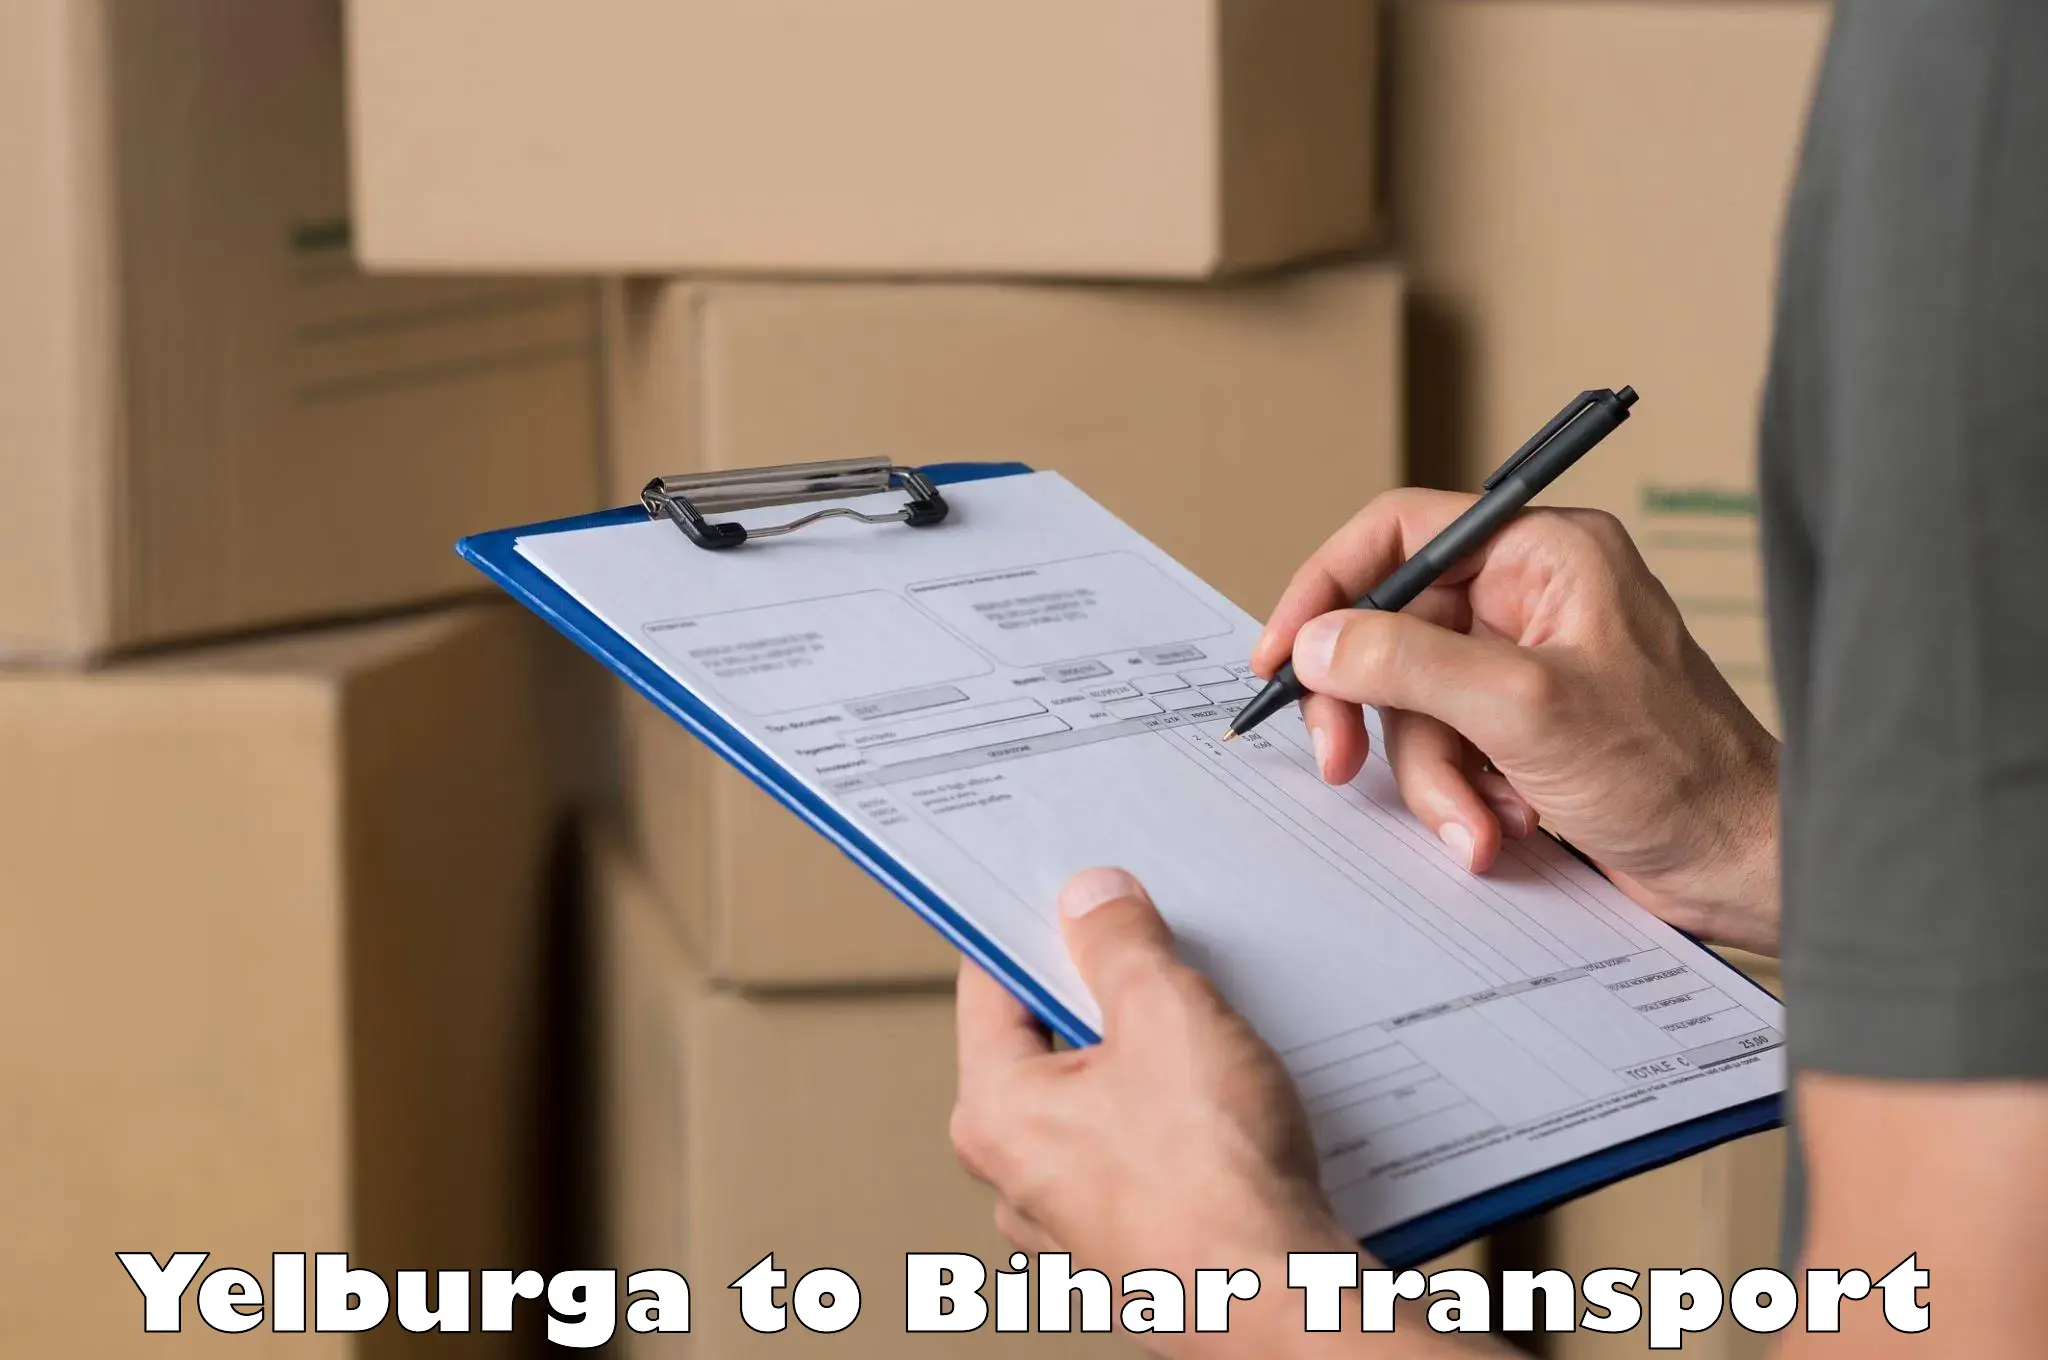 Air freight transport services Yelburga to Sheikhpura